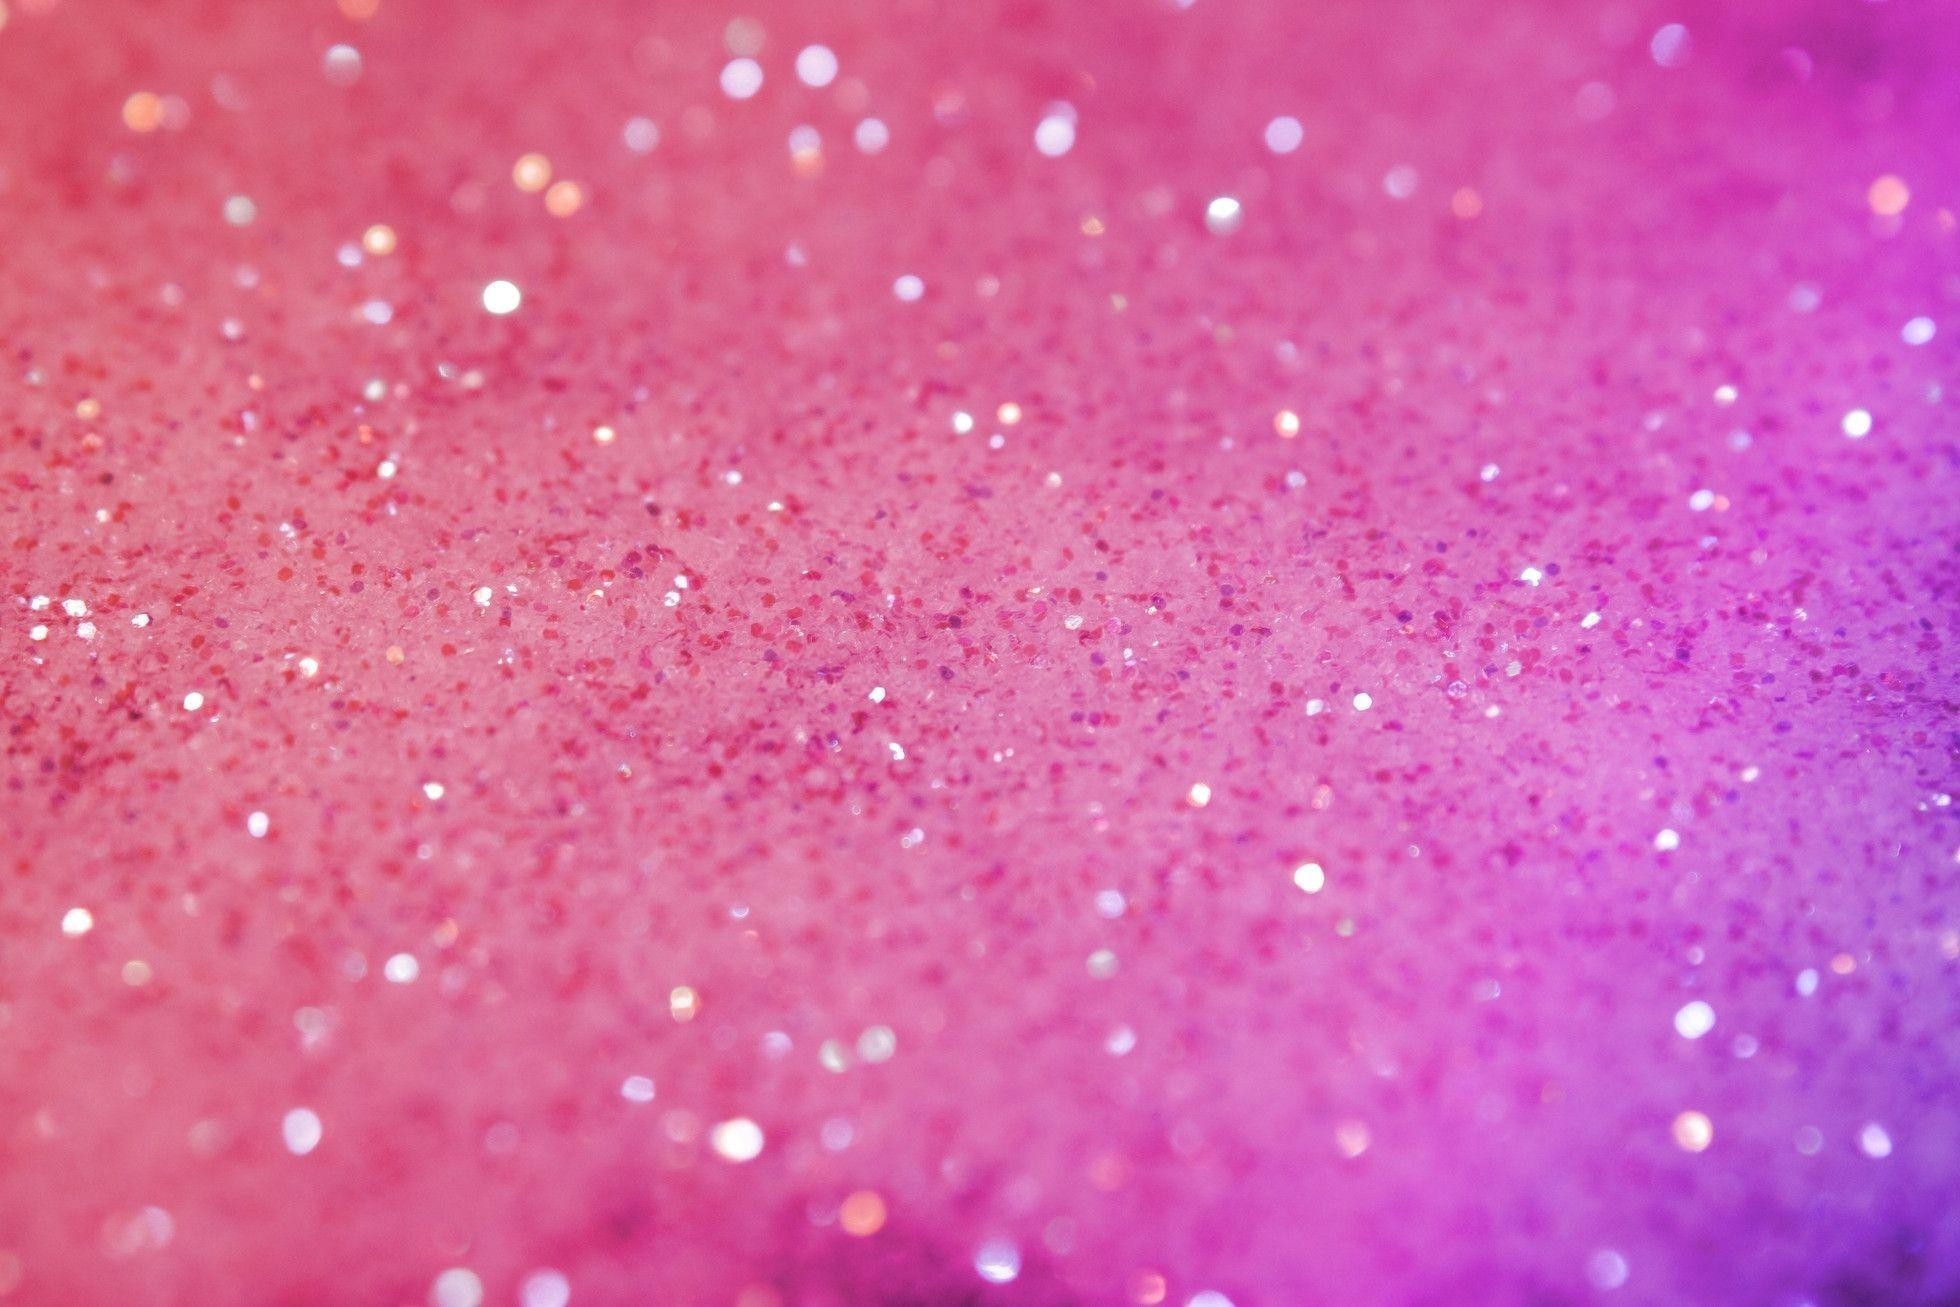 1960x1307  Pink Glitter Desktop Backgrounds, wallpaper, Pink Glitter Desktop  .